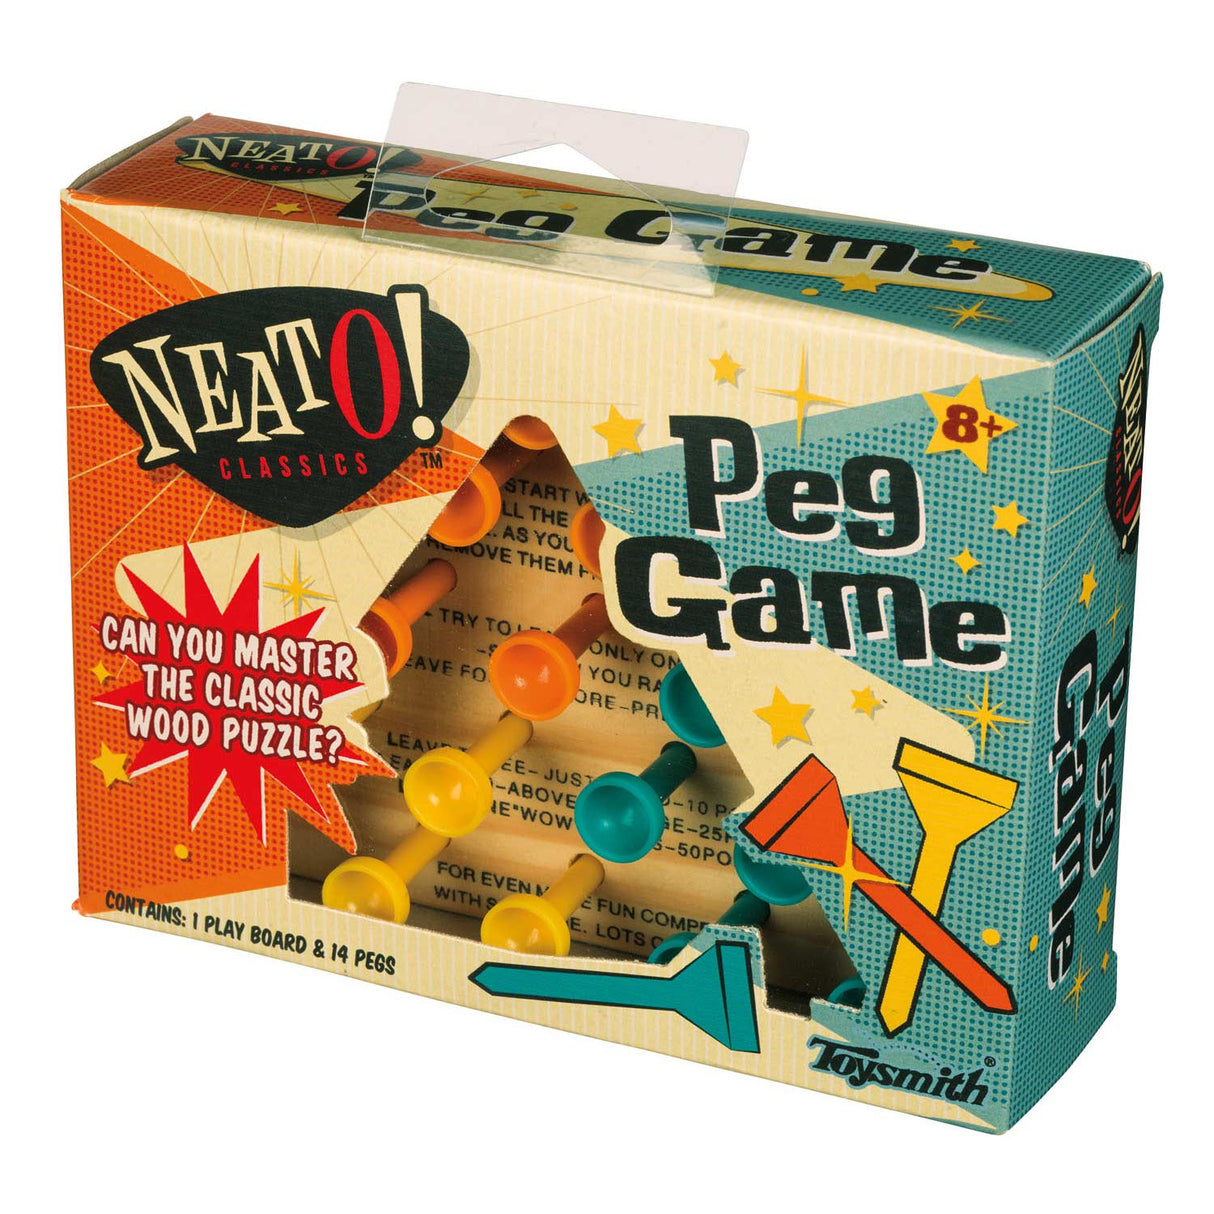 Peg Game